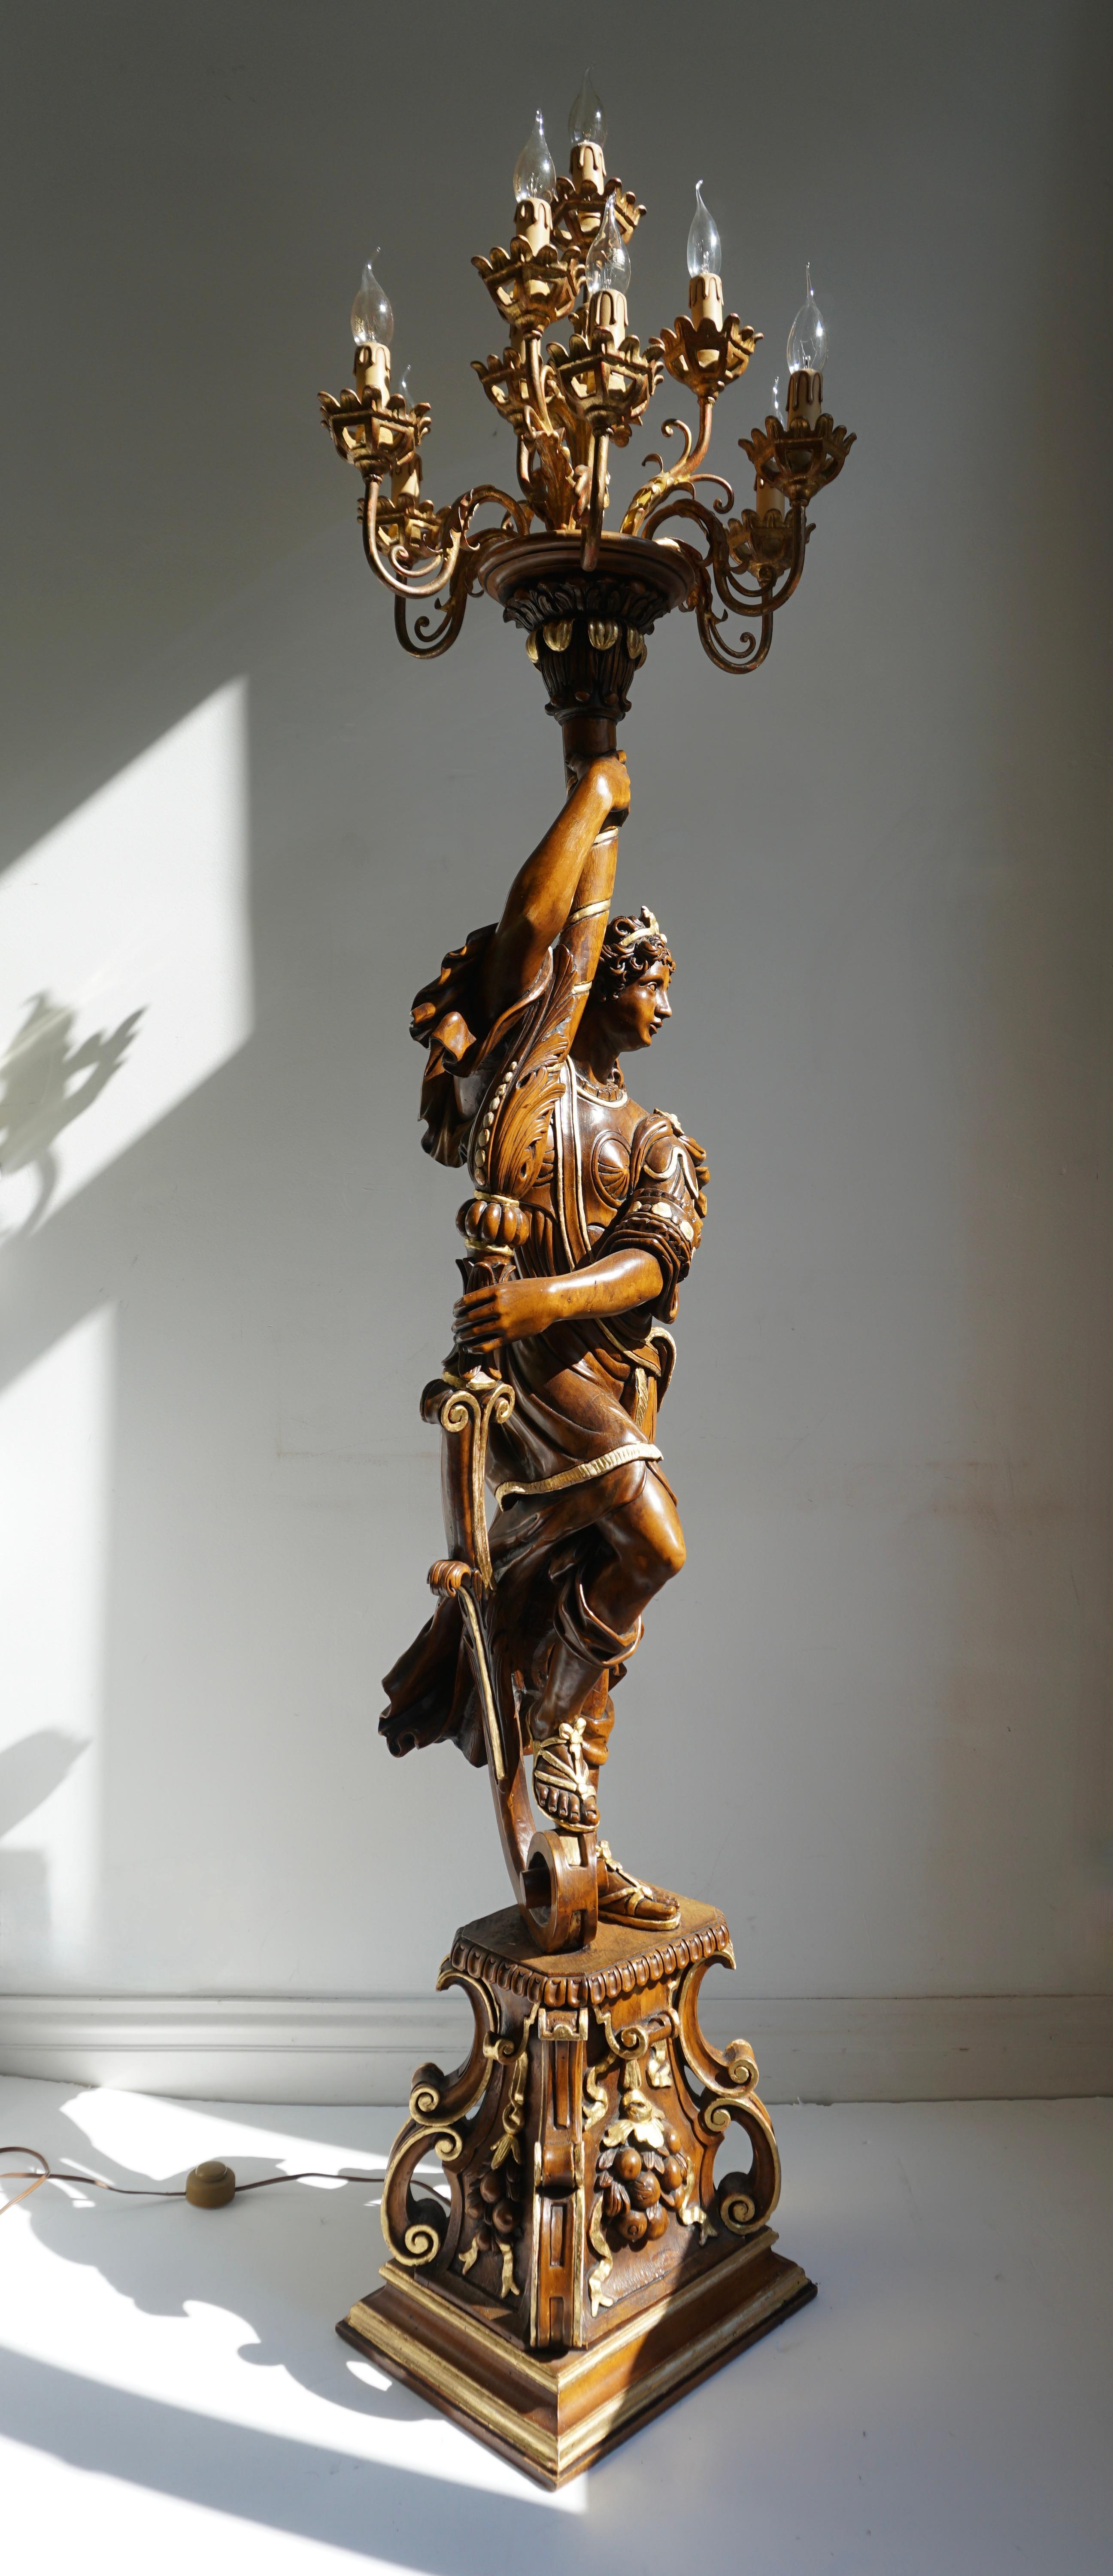 Dies ist eine exquisite dekorative Stehlampe im venezianischen Stil aus Florenz!  
Diese seltene und elegante italienische Figur aus der Mitte des Jahrhunderts ist aus Holz geschnitzt und polychrom bemalt und hält einen zehnarmigen Kandelaber. Jeder